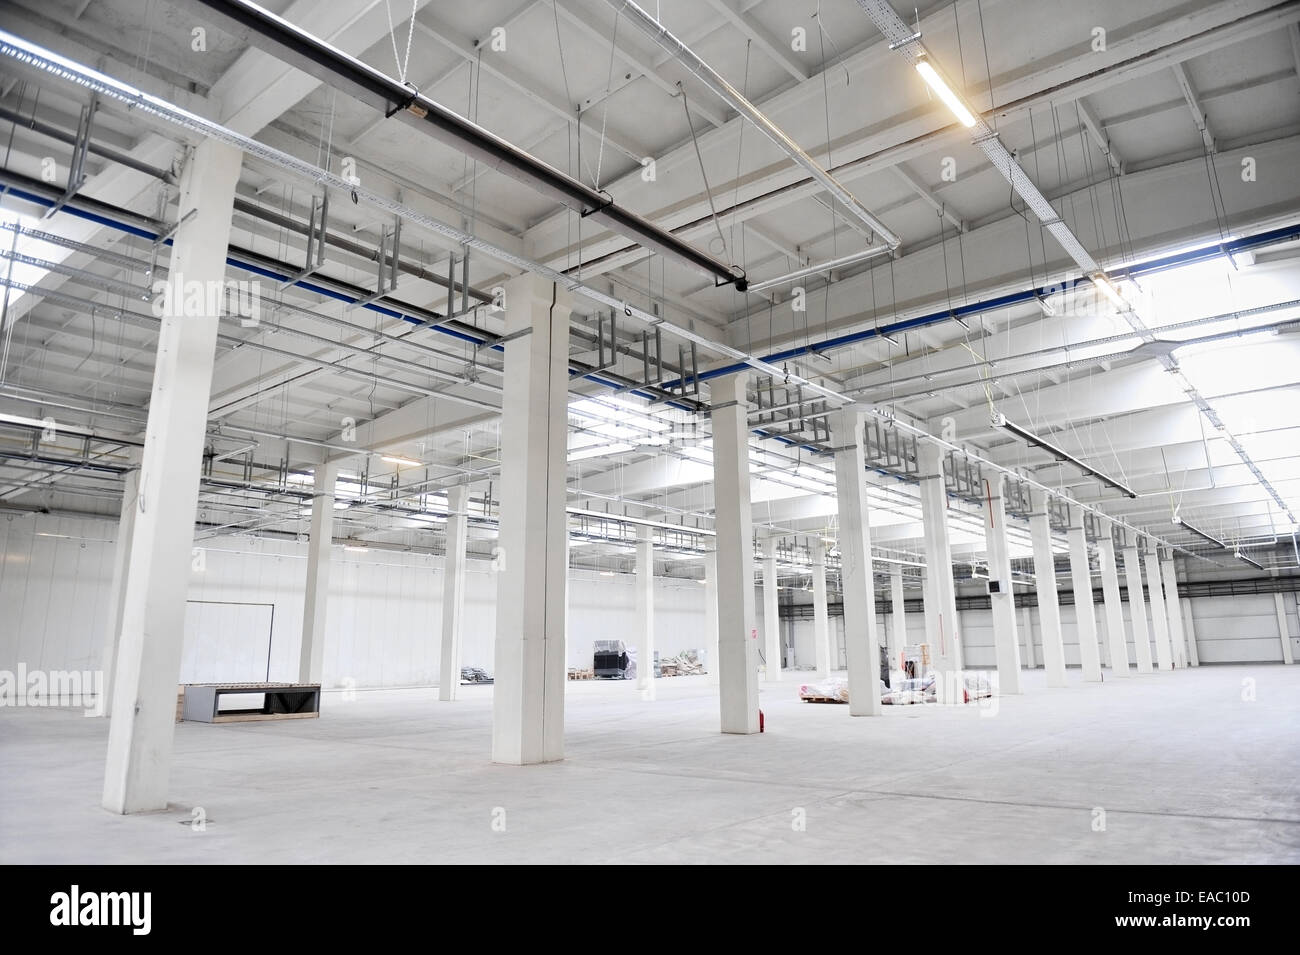 Détail de l'intérieur d'un entrepôt industriel vide avec système de chauffage de plafond Banque D'Images